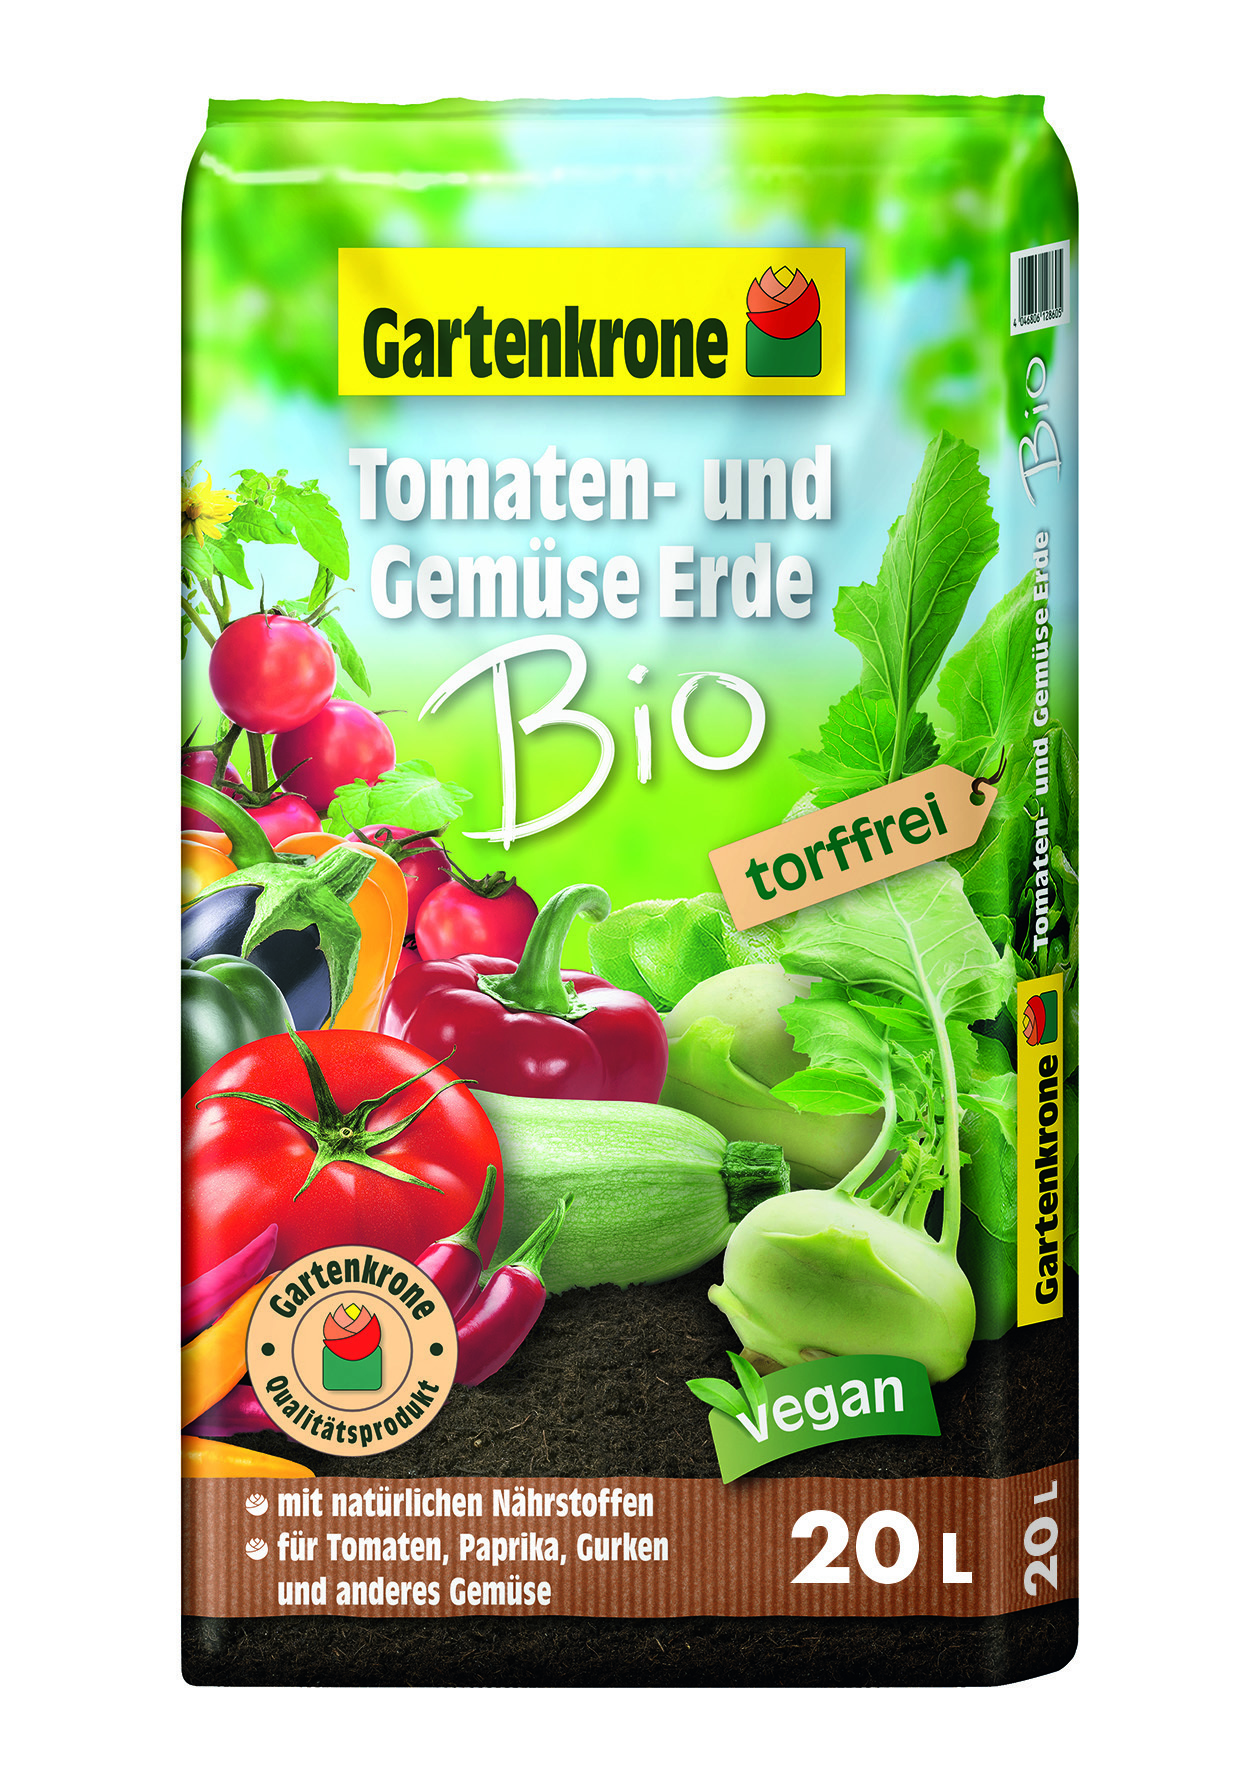 Bio Tomaten - und Gemüseerde